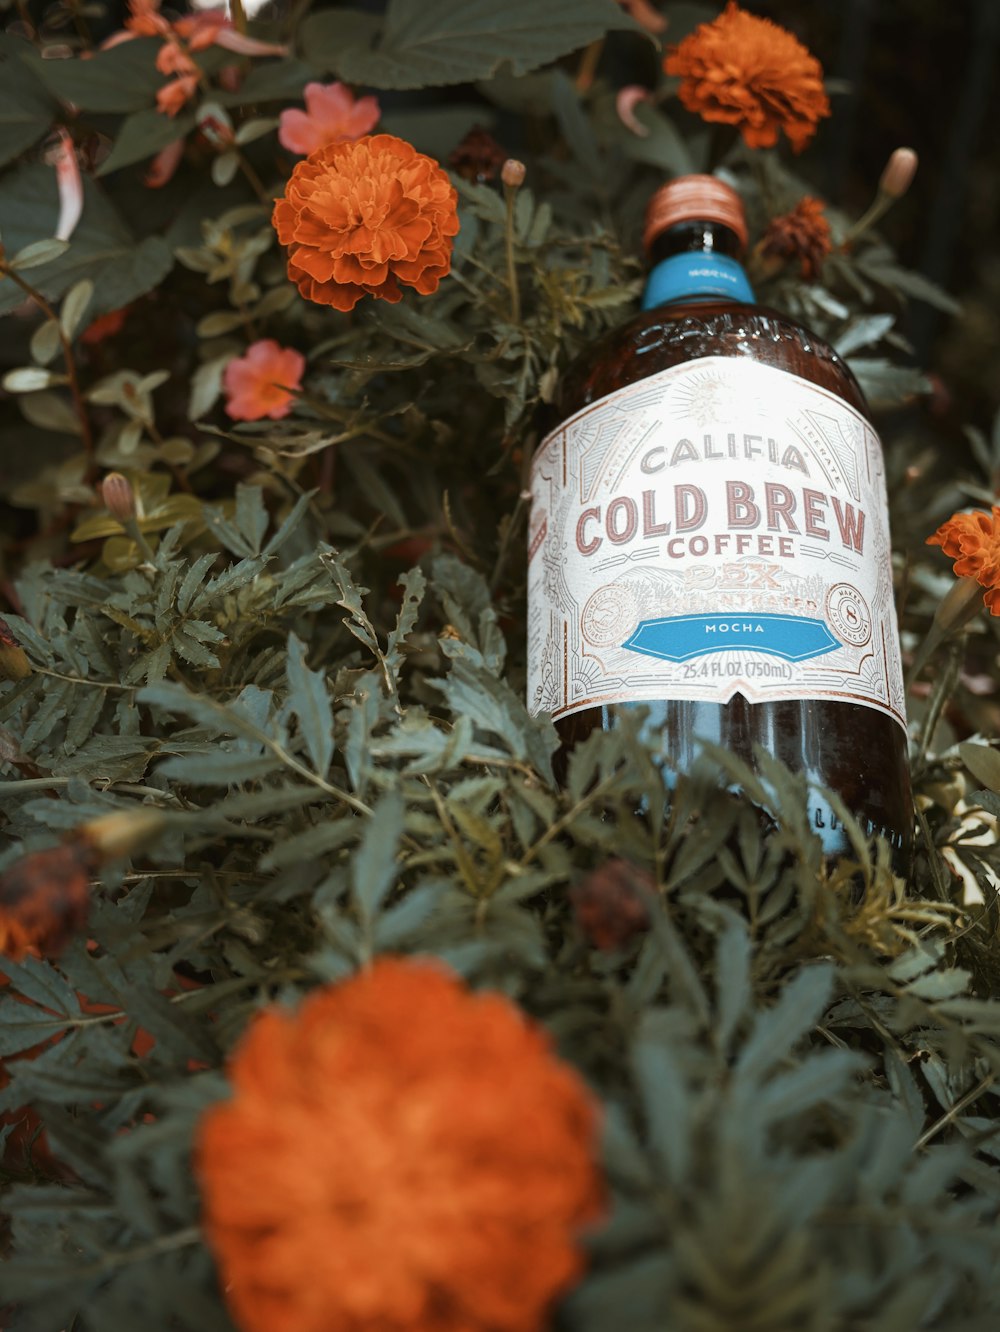 Califia cold brew bottle on orange petaled flower